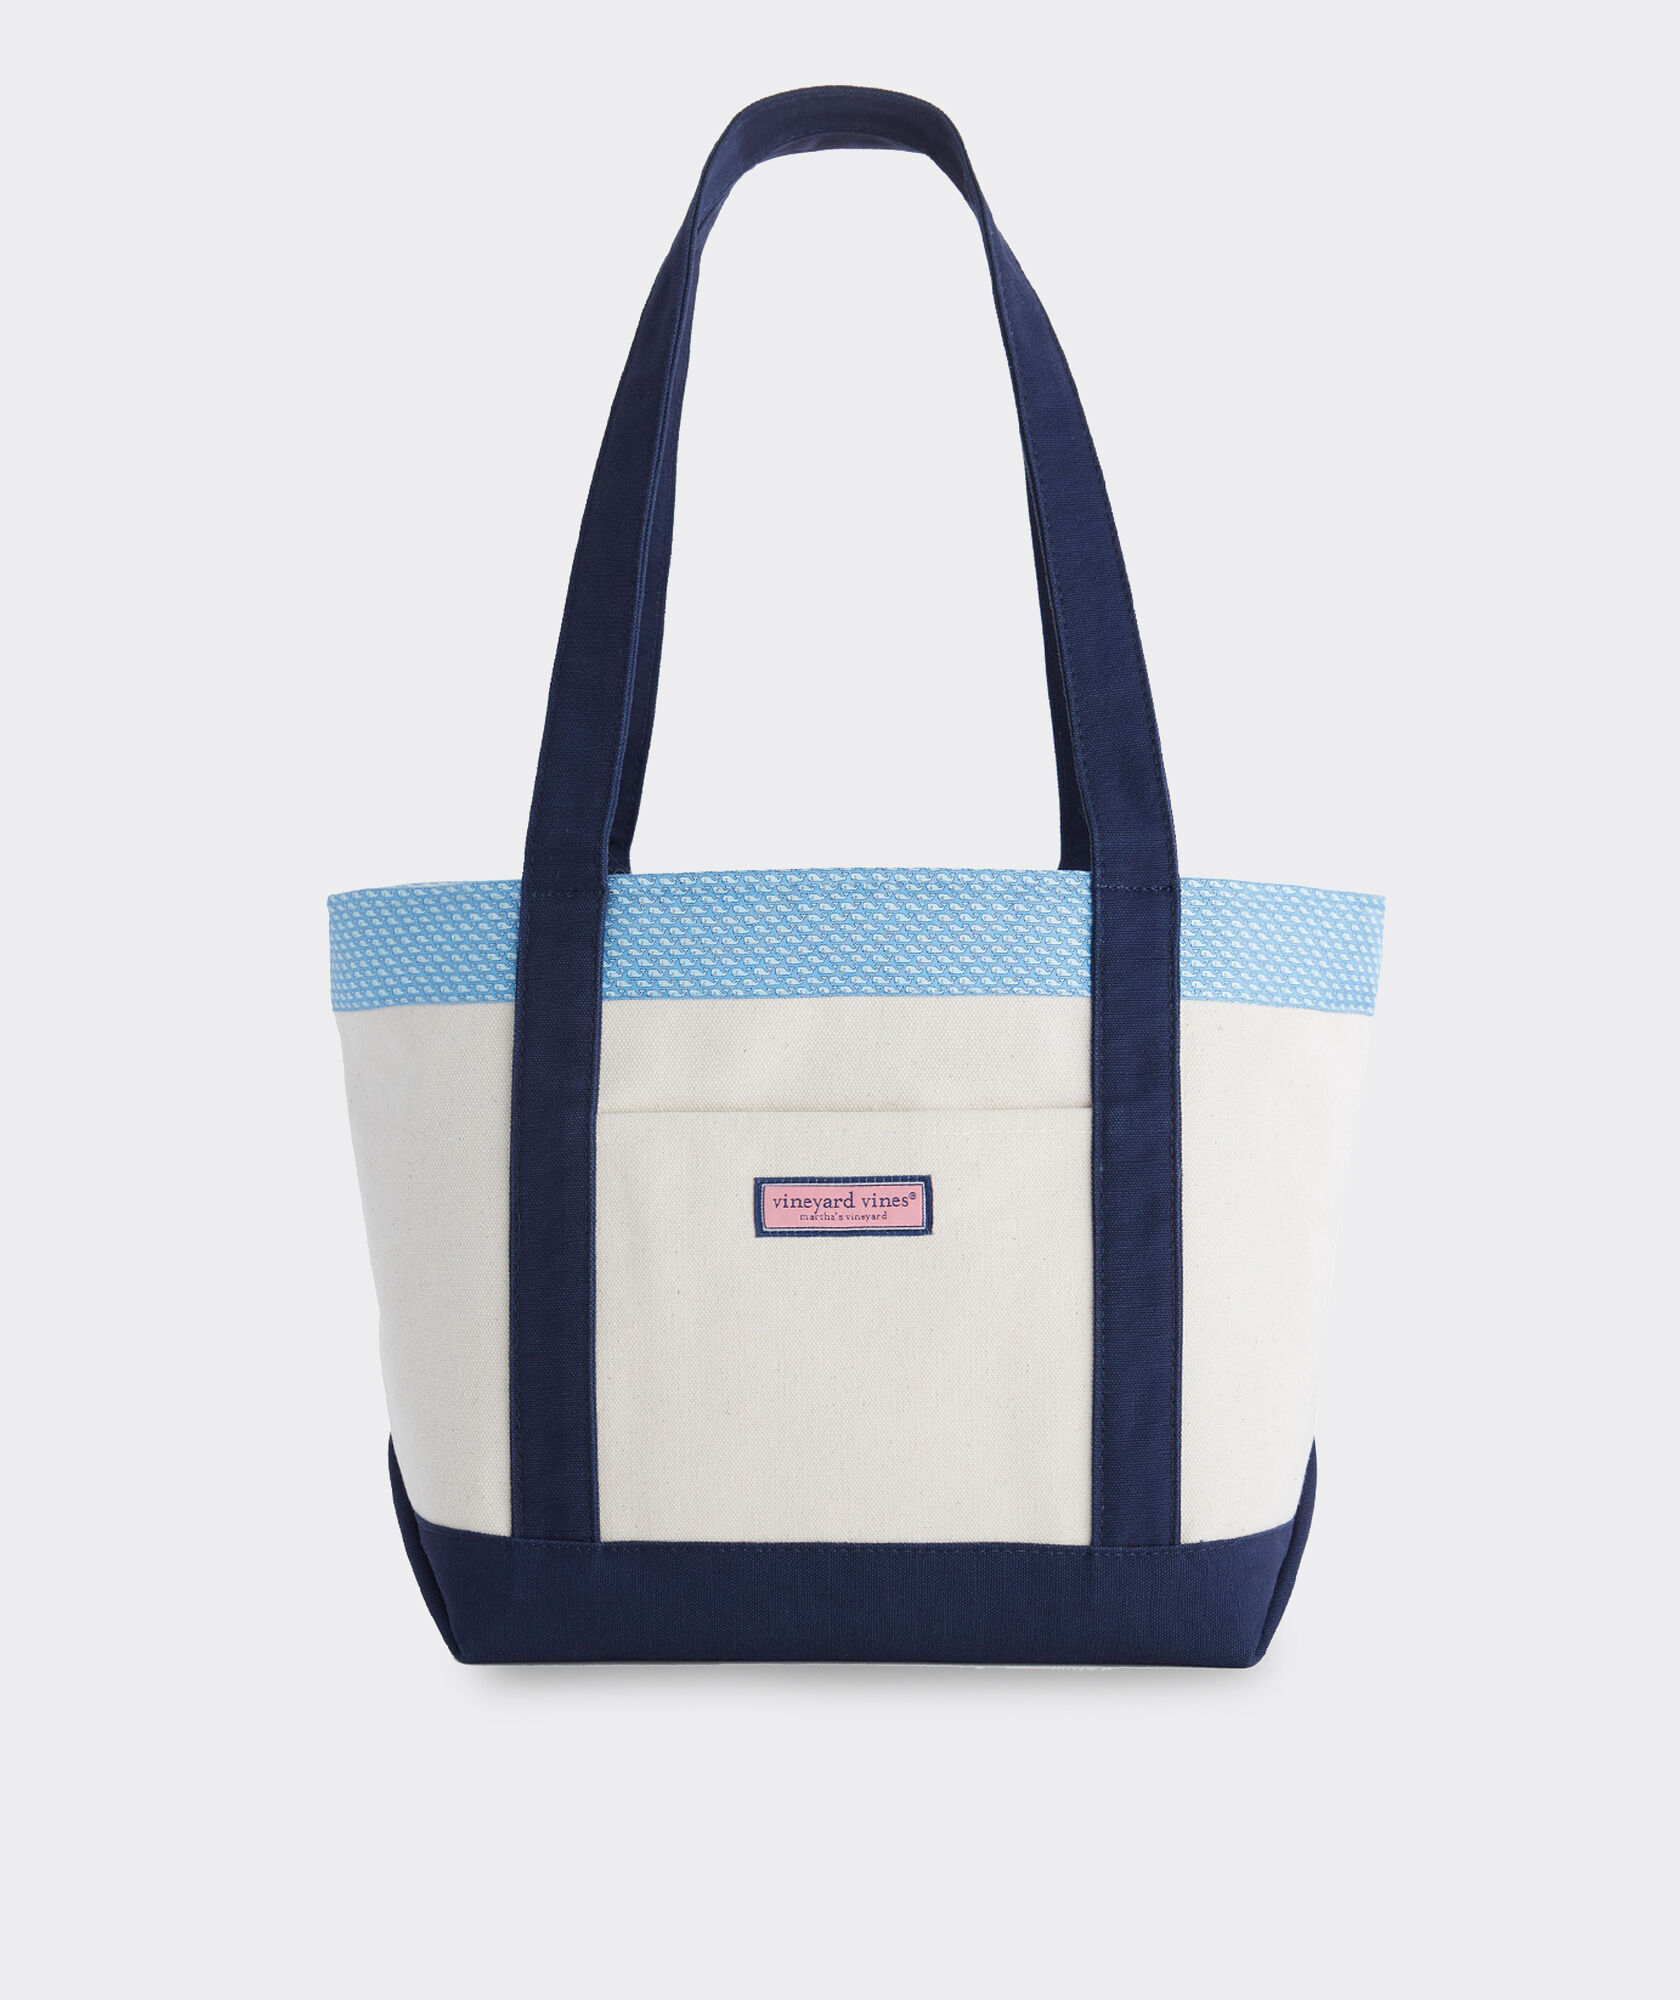 patterned handbags